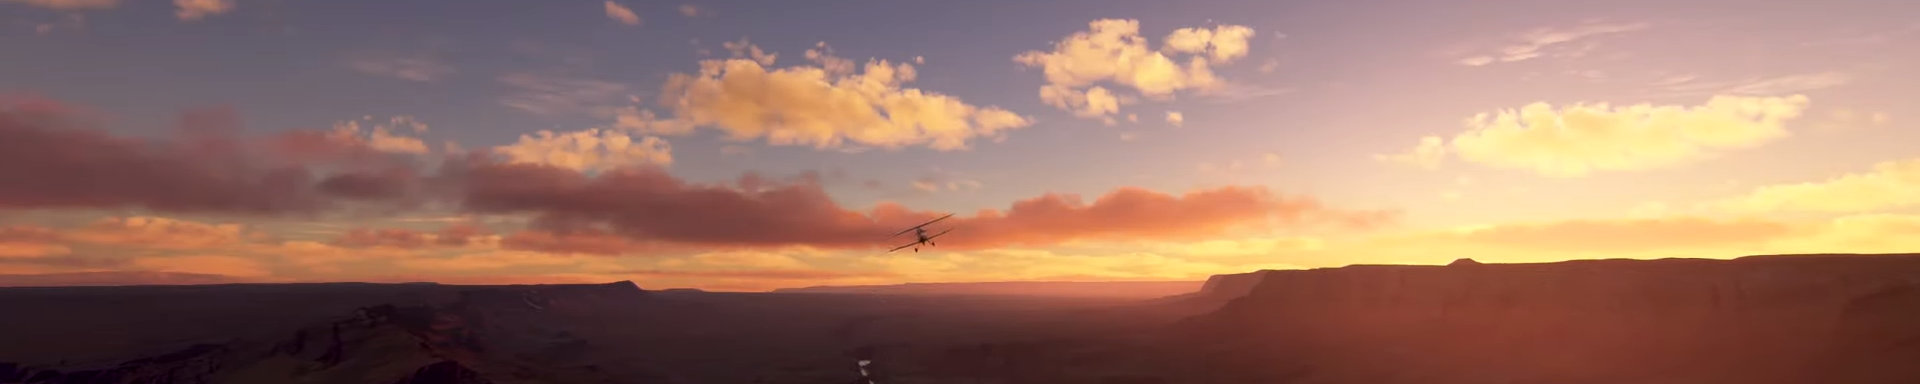 Microsoft Flight Simulator 2020 World Update II: U.S. slice